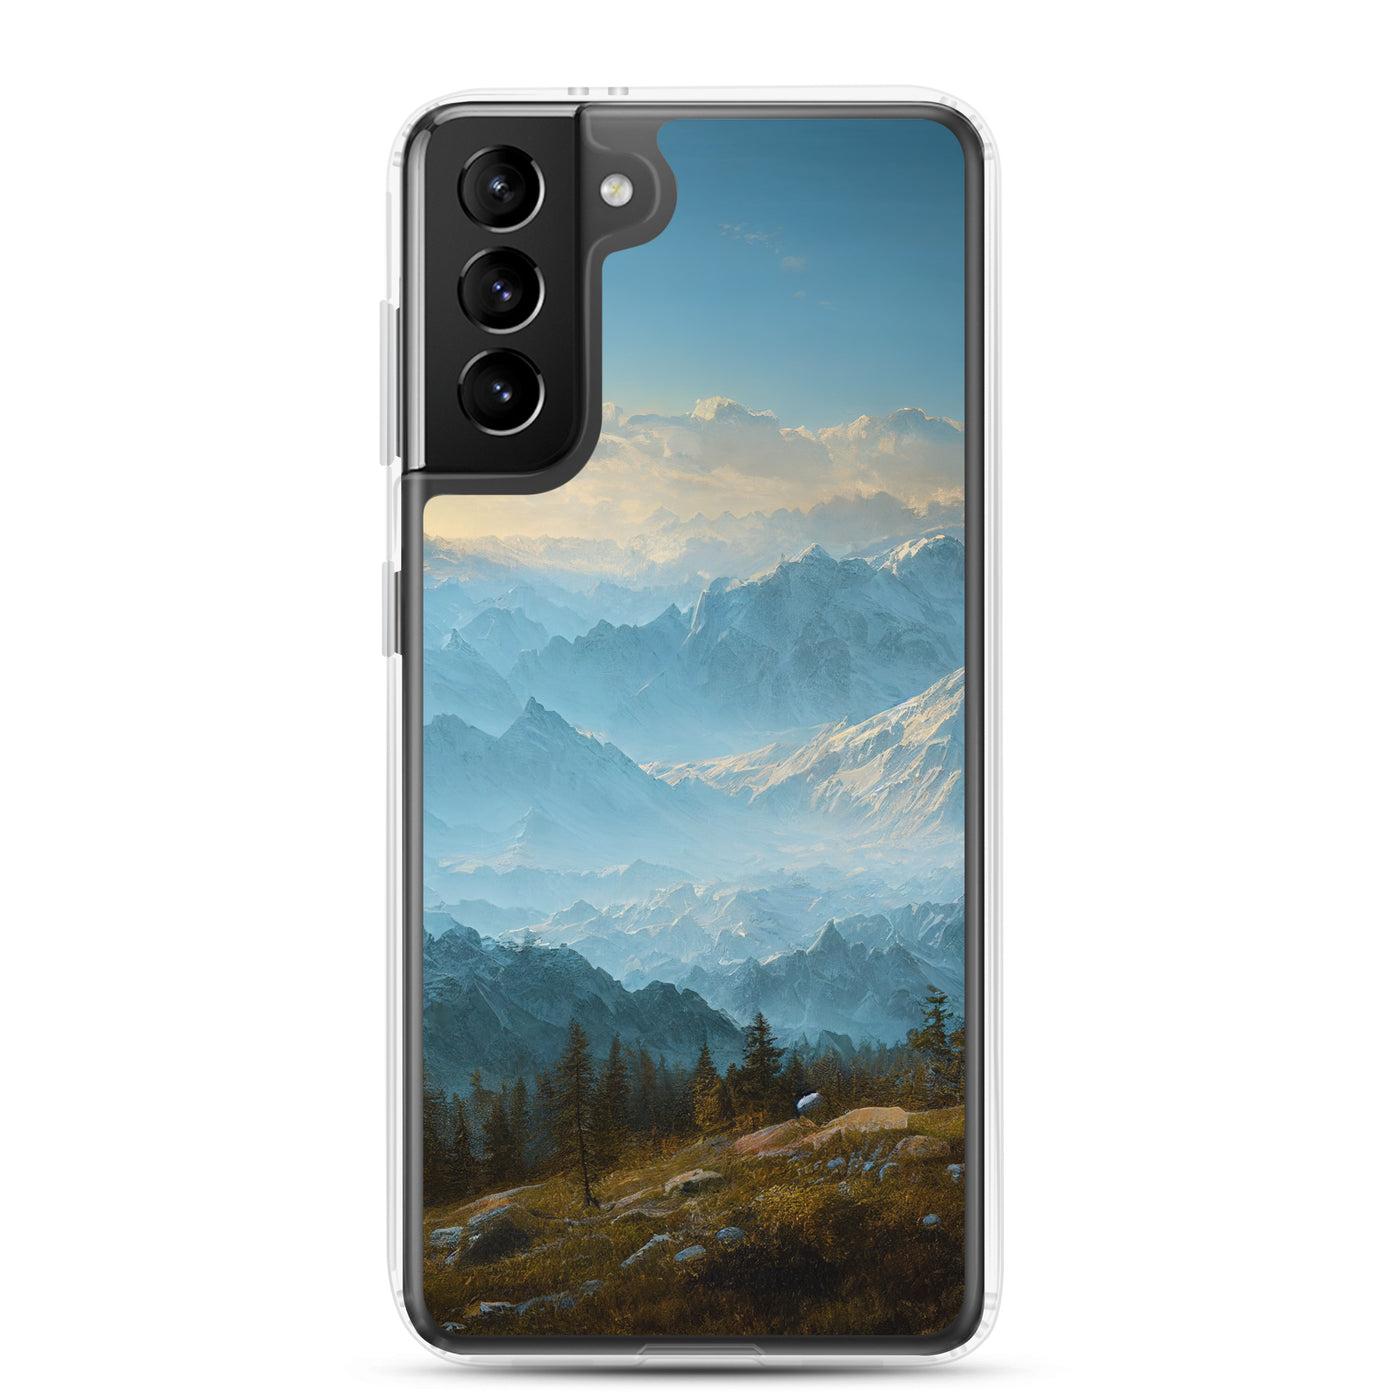 Schöne Berge mit Nebel bedeckt - Ölmalerei - Samsung Schutzhülle (durchsichtig) berge xxx Samsung Galaxy S21 Plus